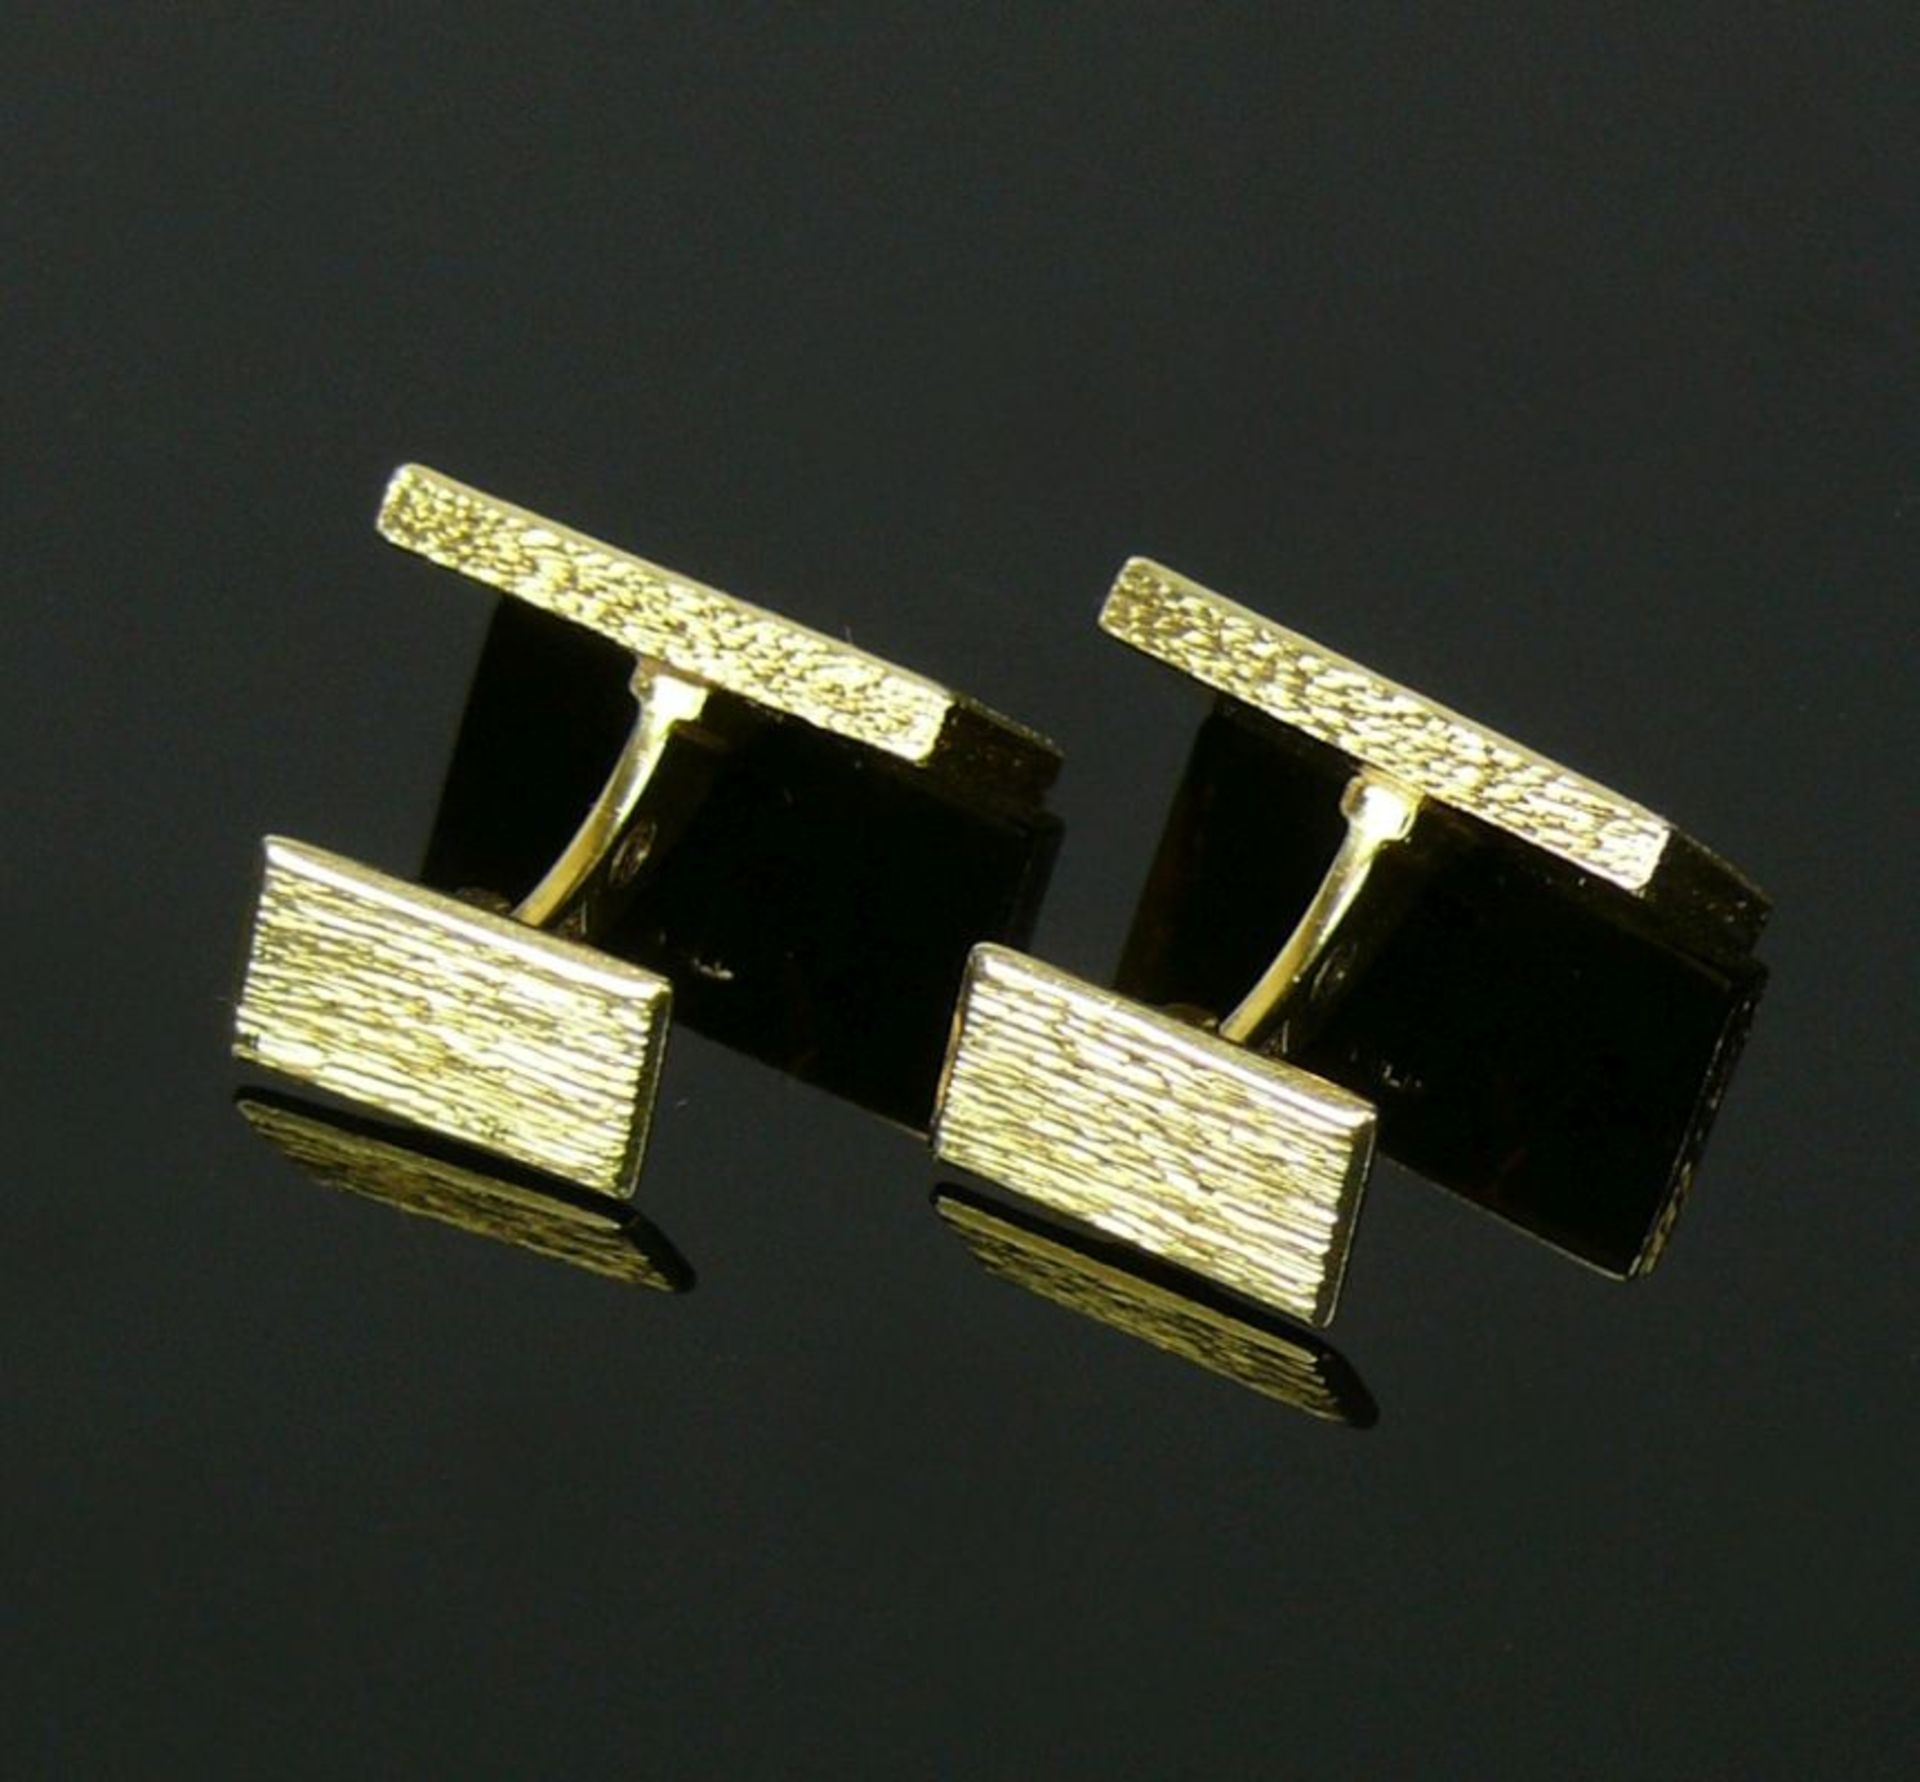 Paar Manschettenknöpfe14ct GG; rechteckige, schlichte Form; 25,5g; Goldschmiedearbeit - Bild 2 aus 4